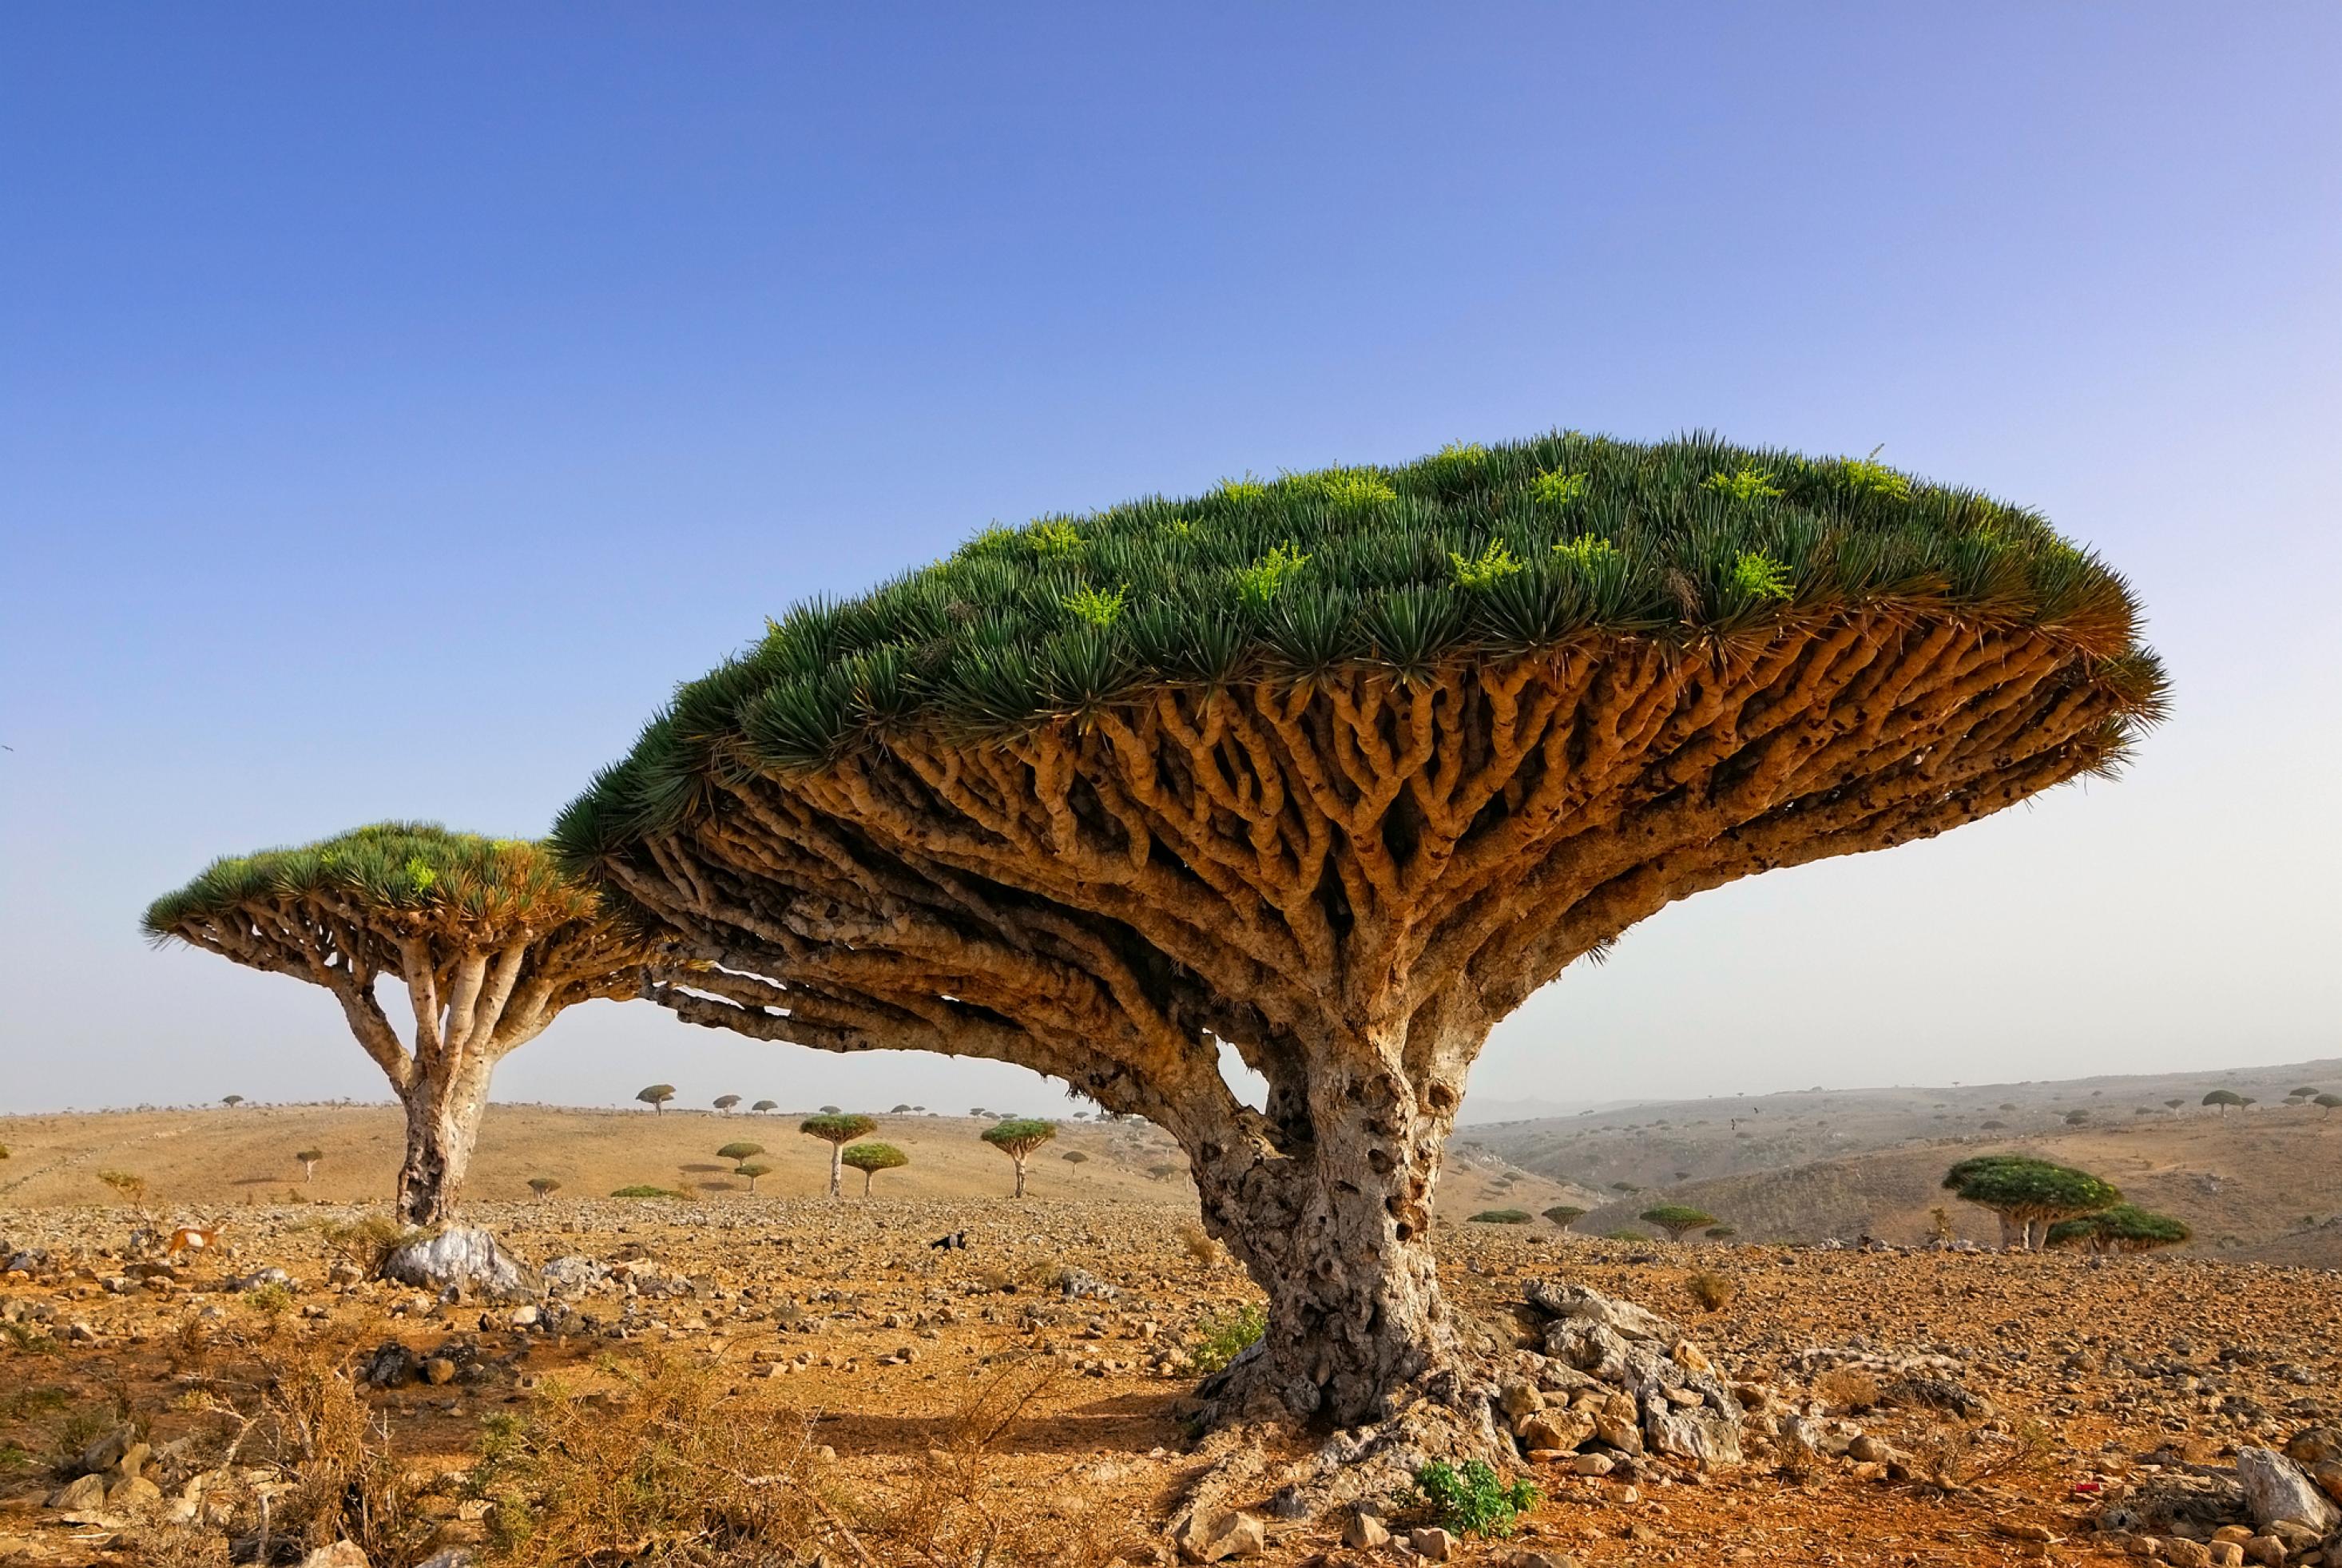 Der Drachenbaum steht in einer Wüstenlandschaft. Seine zahlreichen Äste wachen so symmetrisch in Himmel, dass daraus eine Art Plattform entsteht. Deren sattes Grün auf der Oberseite steht in starkem Kontrast zur trockenen Landschaft, 